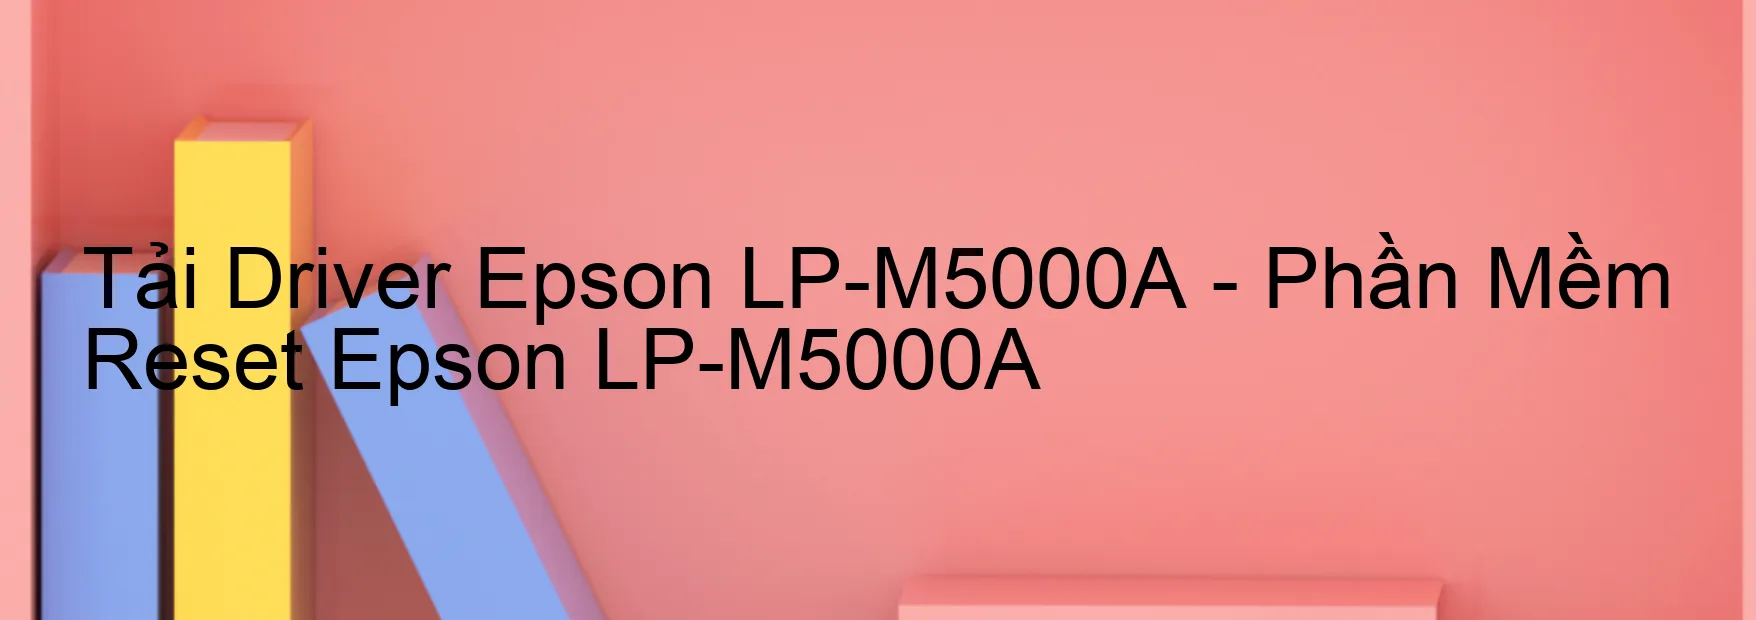 Driver Epson LP-M5000A, Phần Mềm Reset Epson LP-M5000A